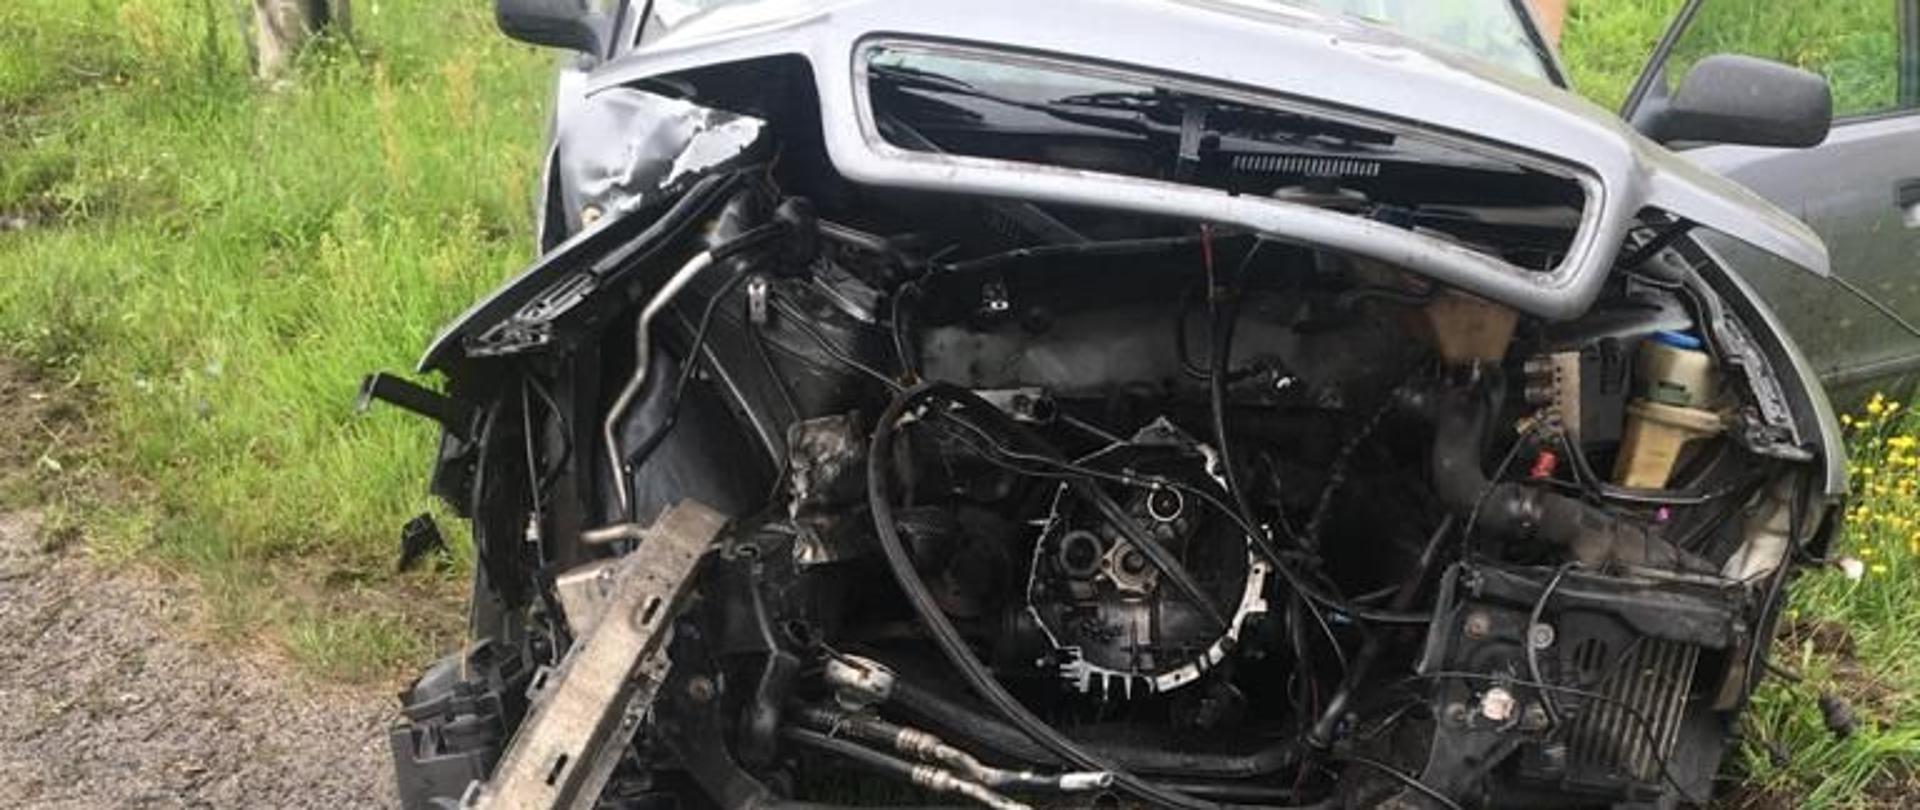 Na zdjęciu widać samochód osobowy marki Audi A4 z rozwaloną komorą silnika. Prawdopodobnie kierowca stracił panowanie nad pojazdem i uderzył w słup energetyczny.